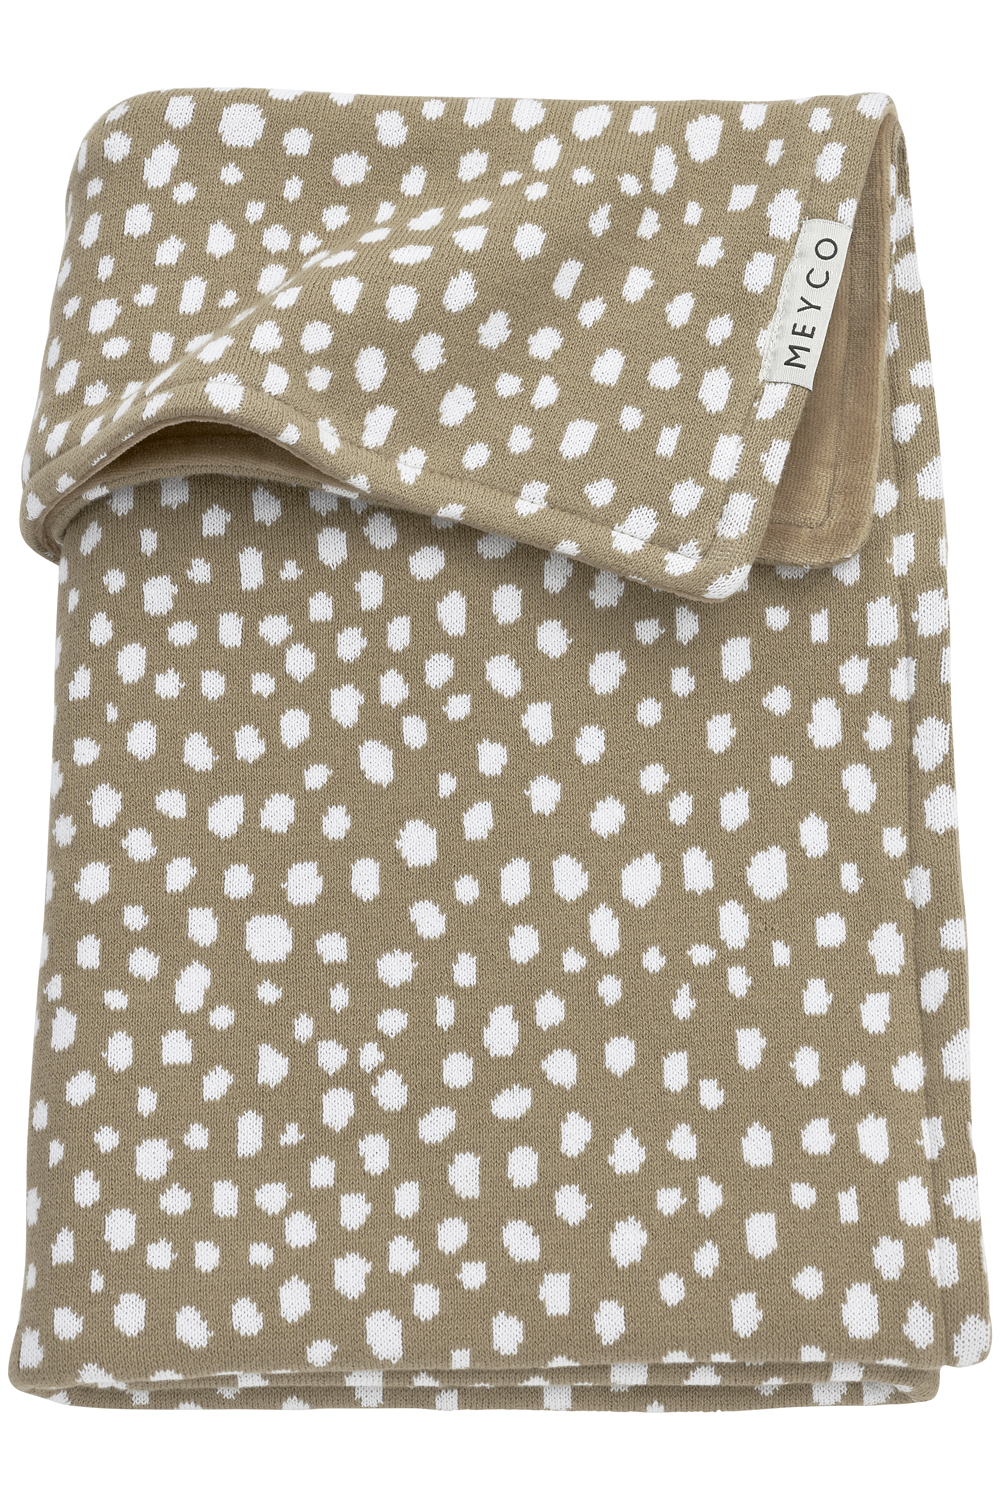 Cot Bed Blanket Velvet Cheetah - Taupe - 100x150cm